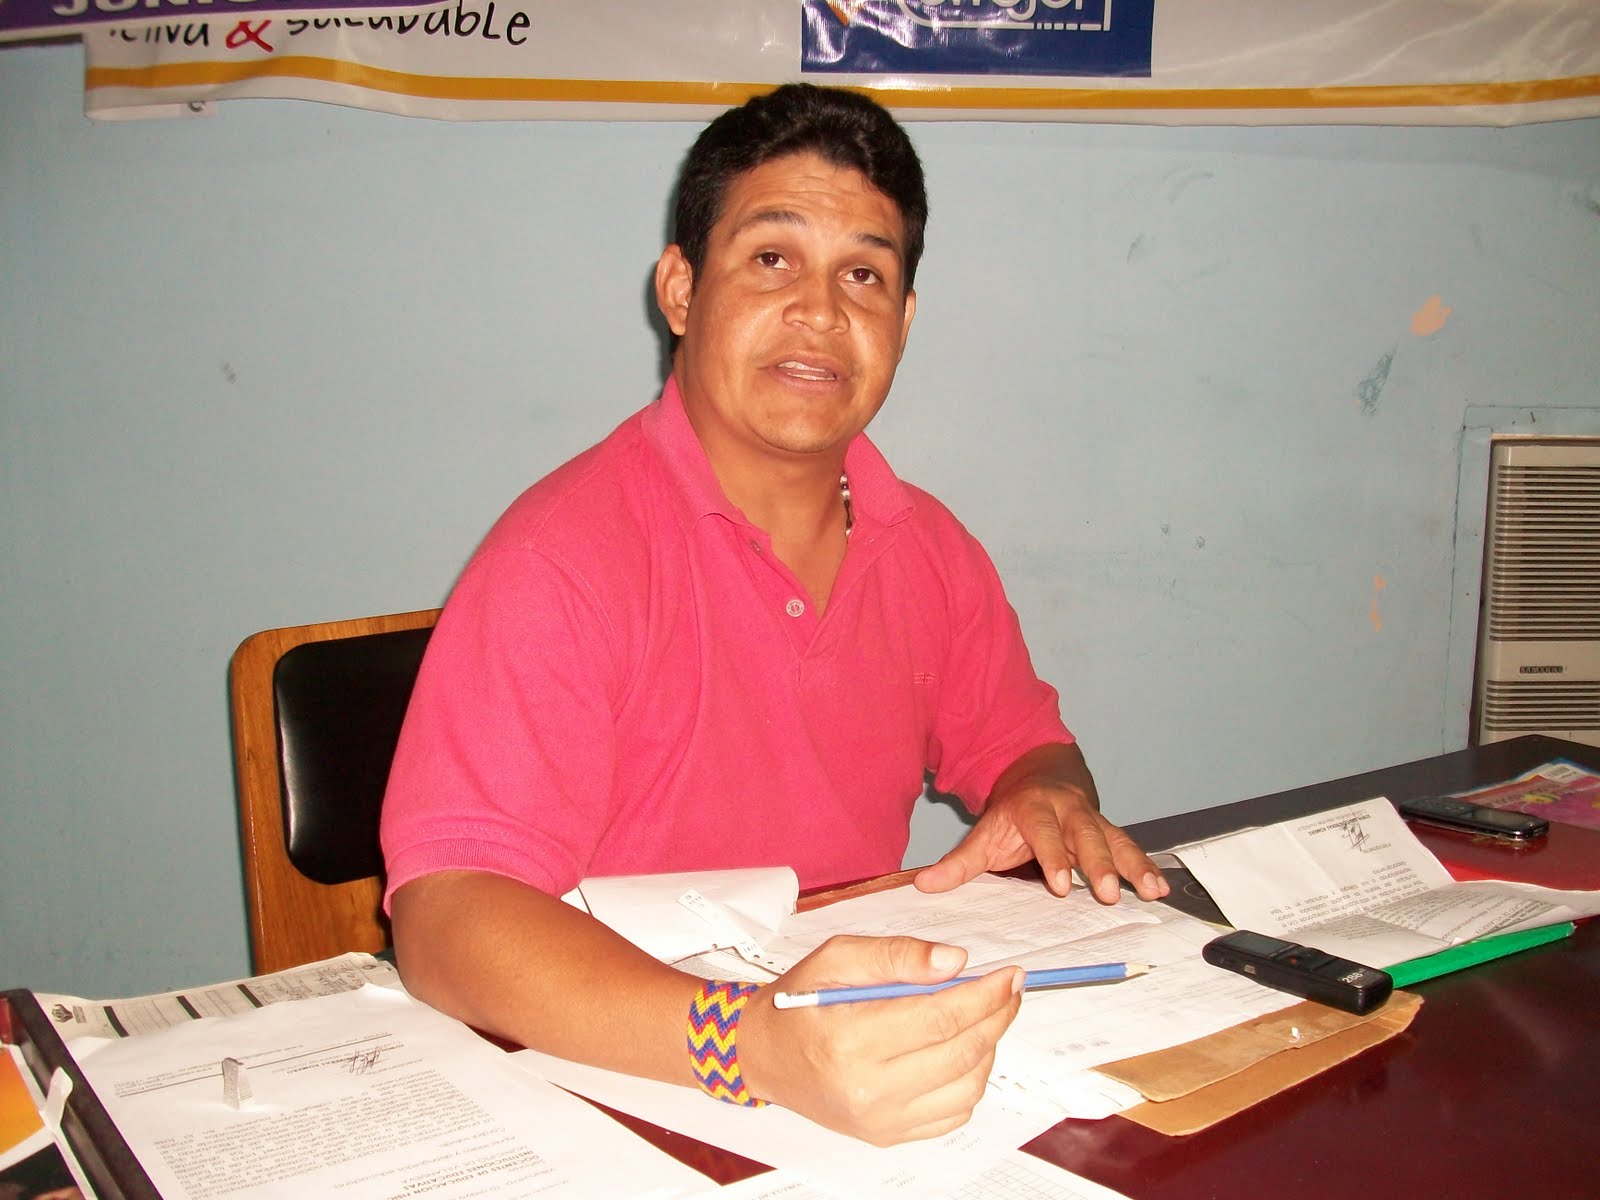 Edwin Contreras